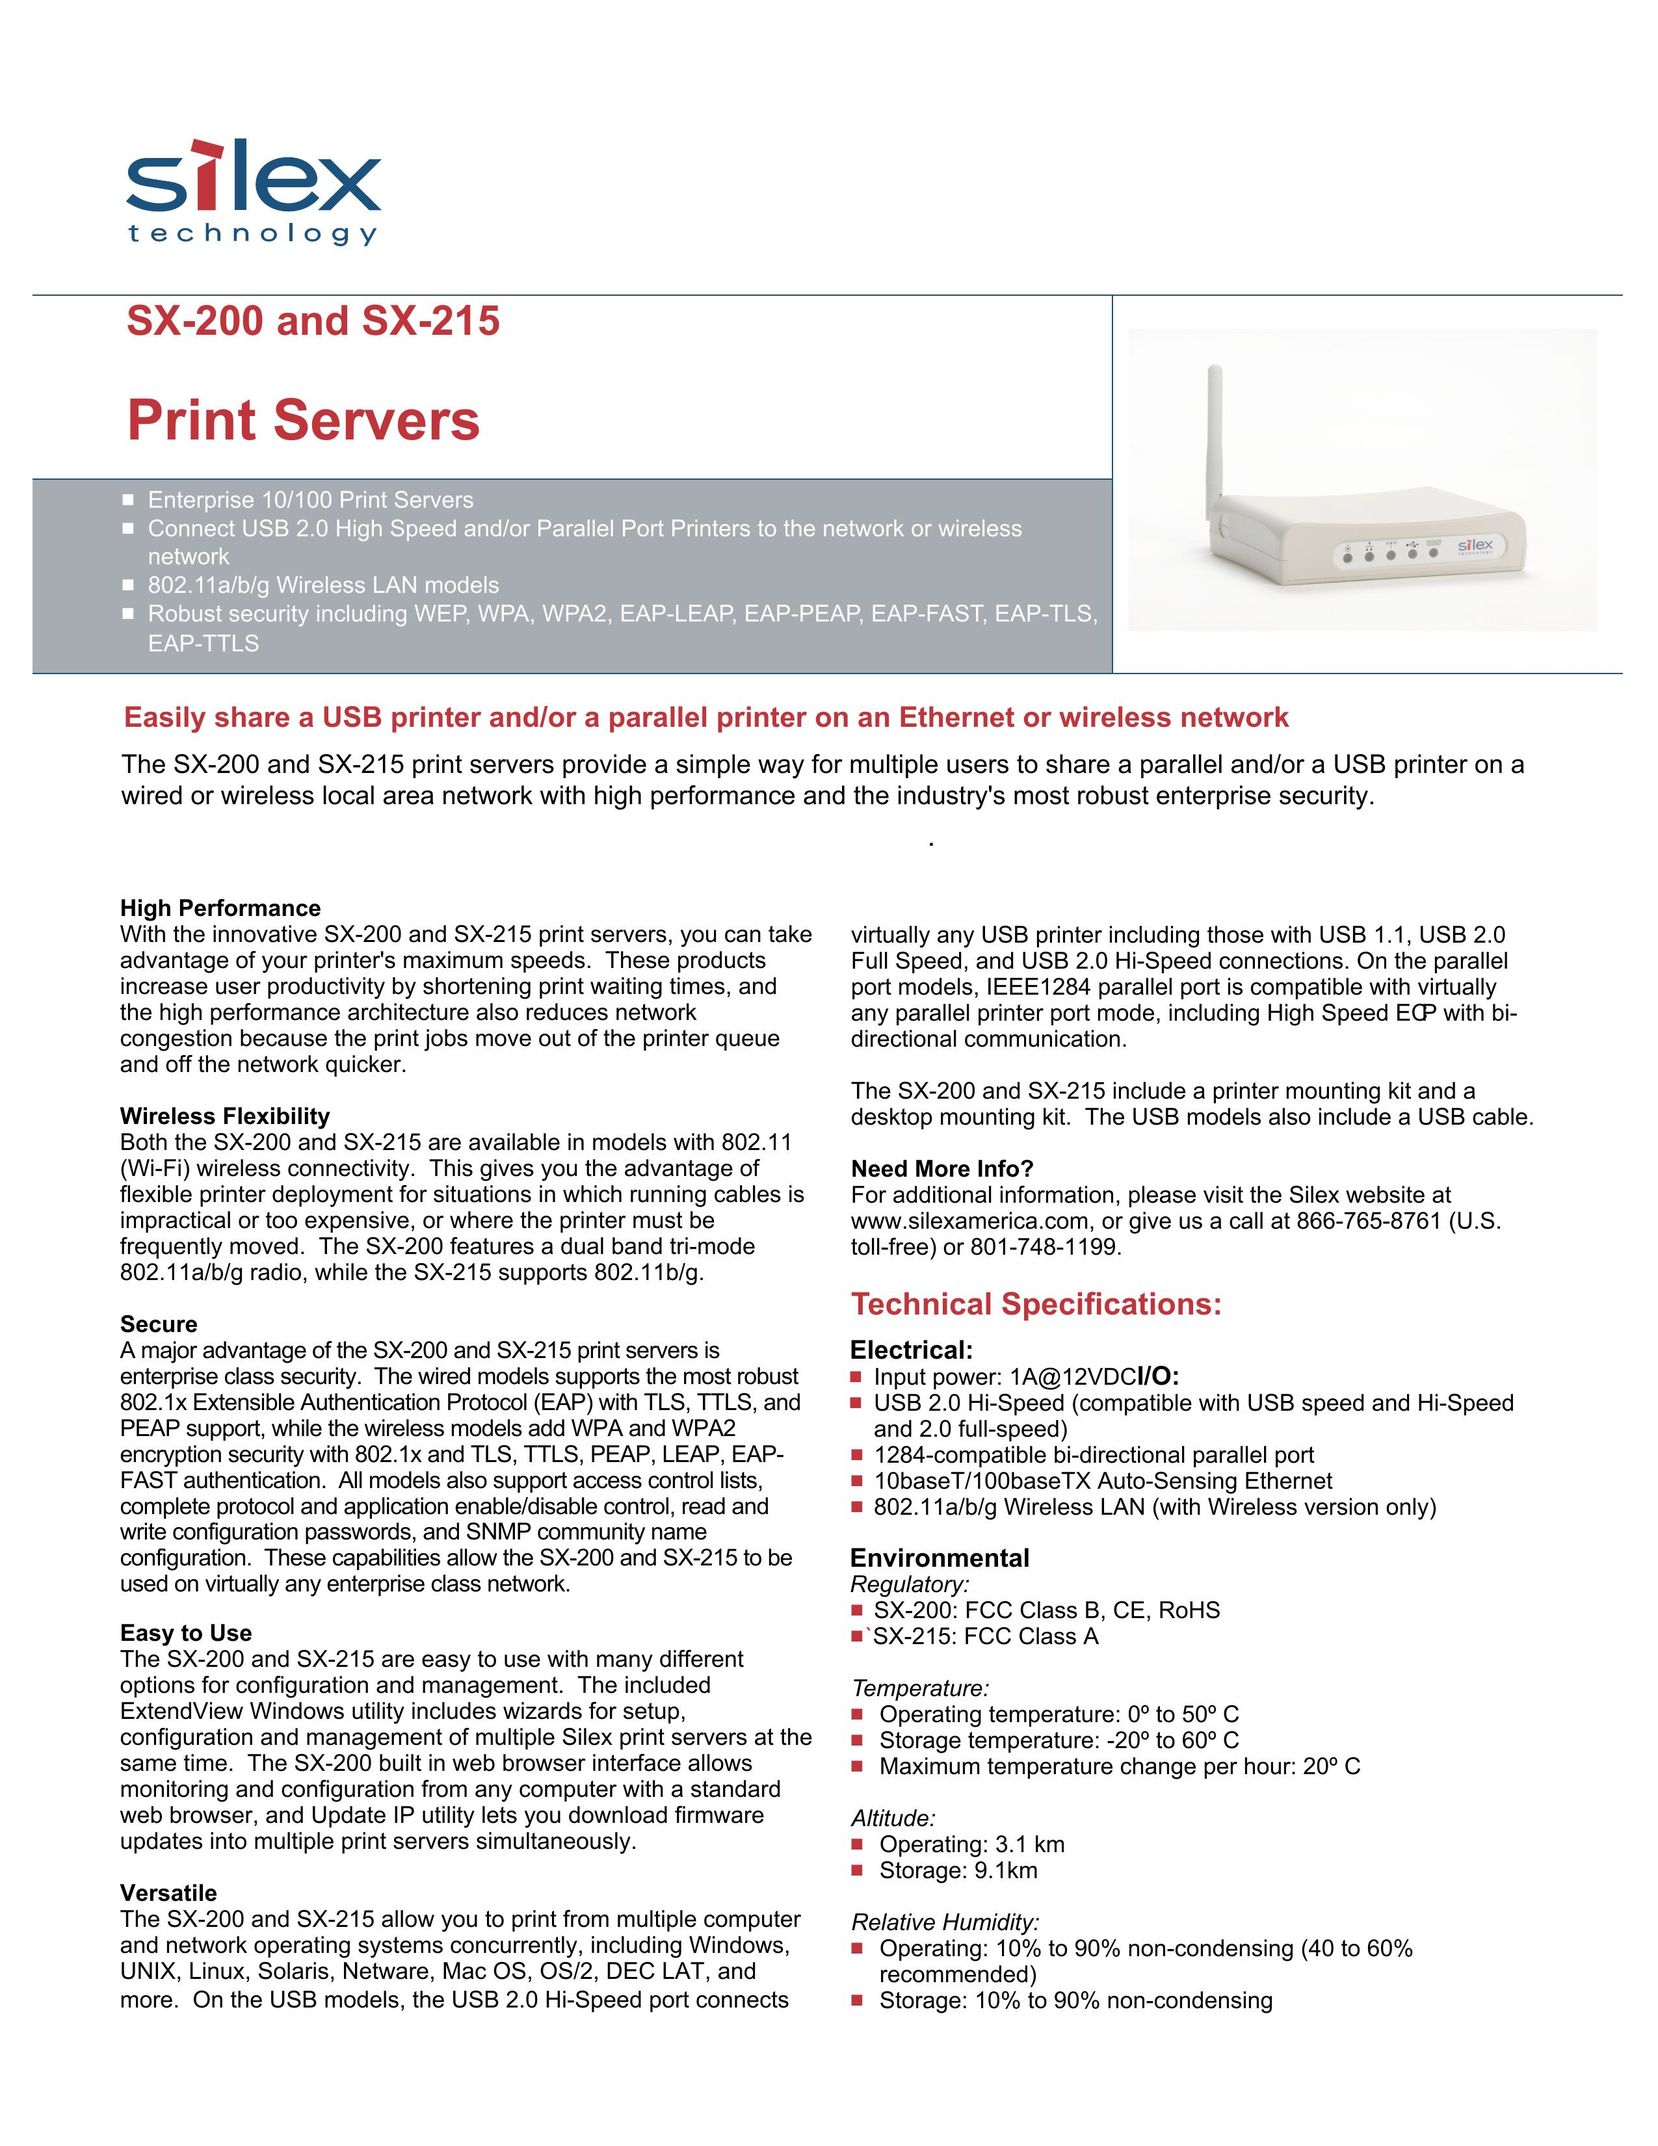 Silex technology SX-200 Network Card User Manual